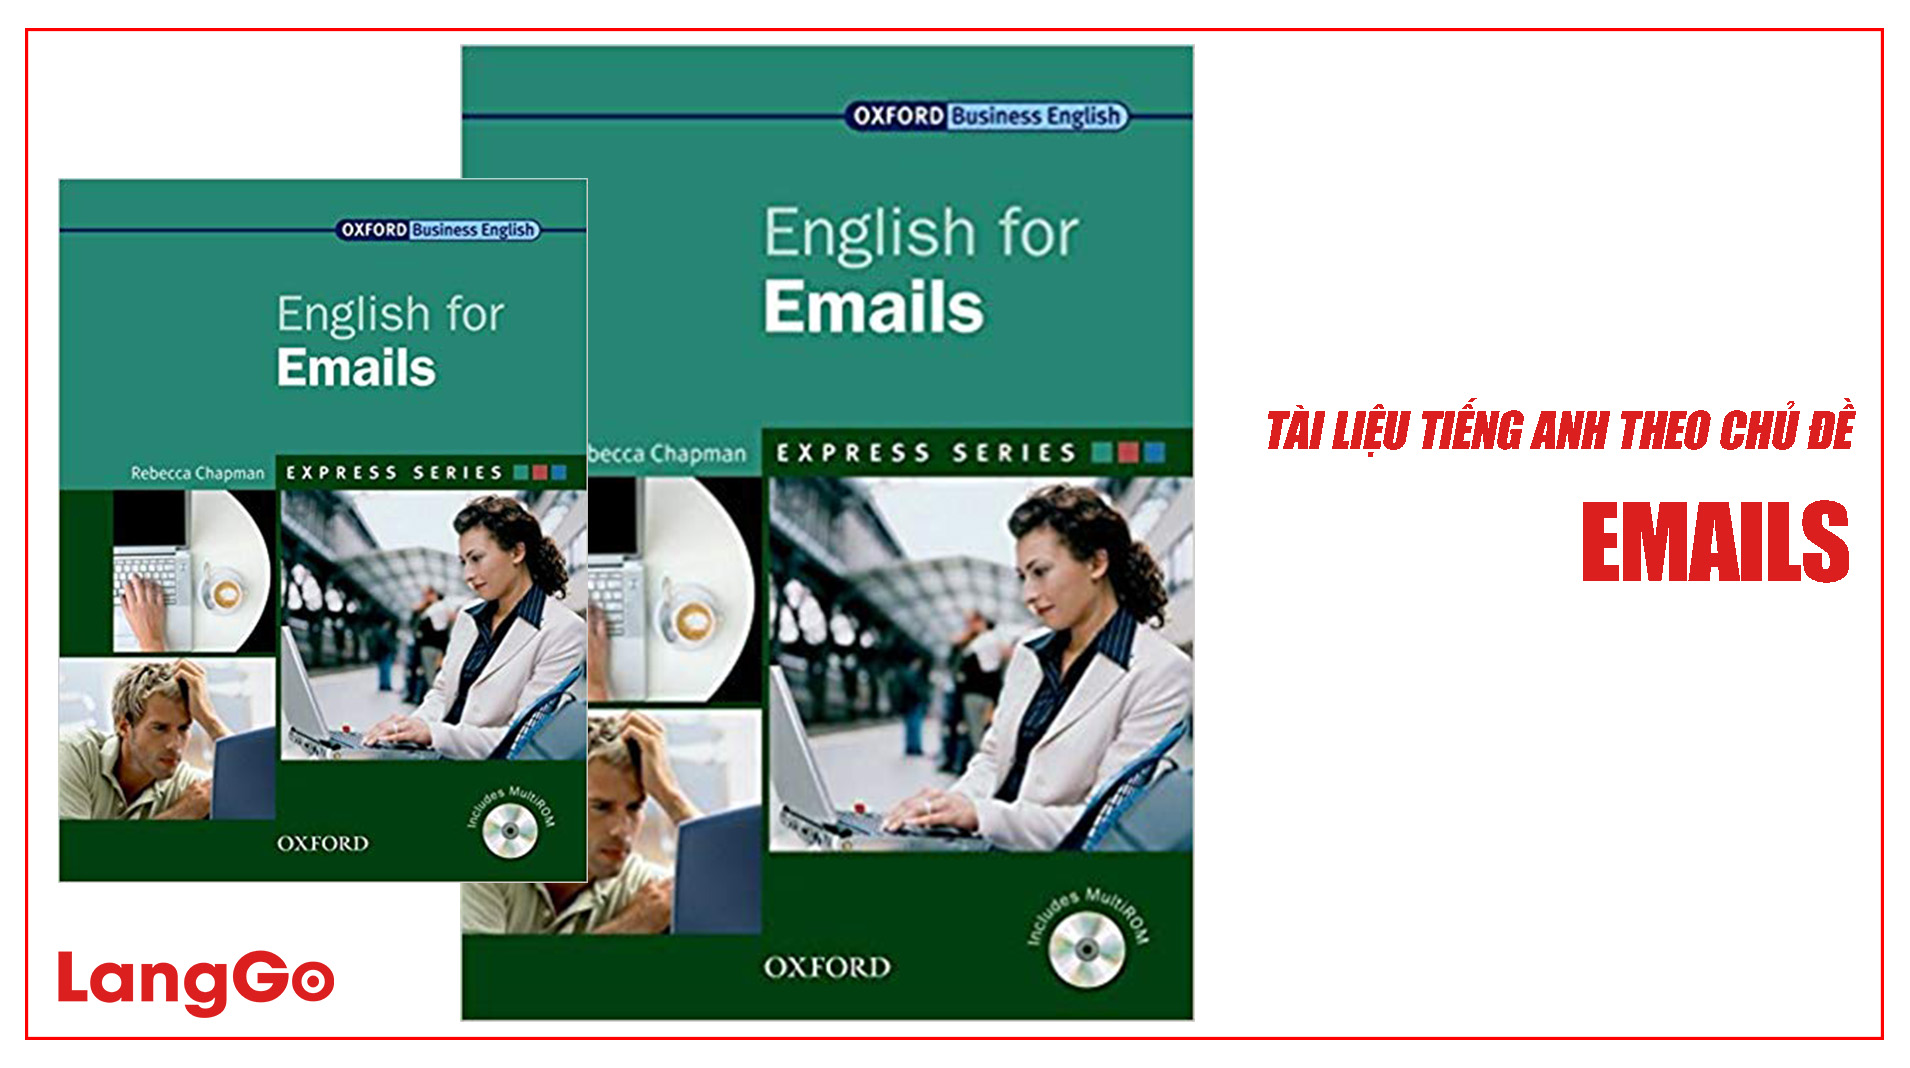 LangGo - Tài liệu tiếng Anh khi viết email thương mại chuyên nghiệp - English for Emails